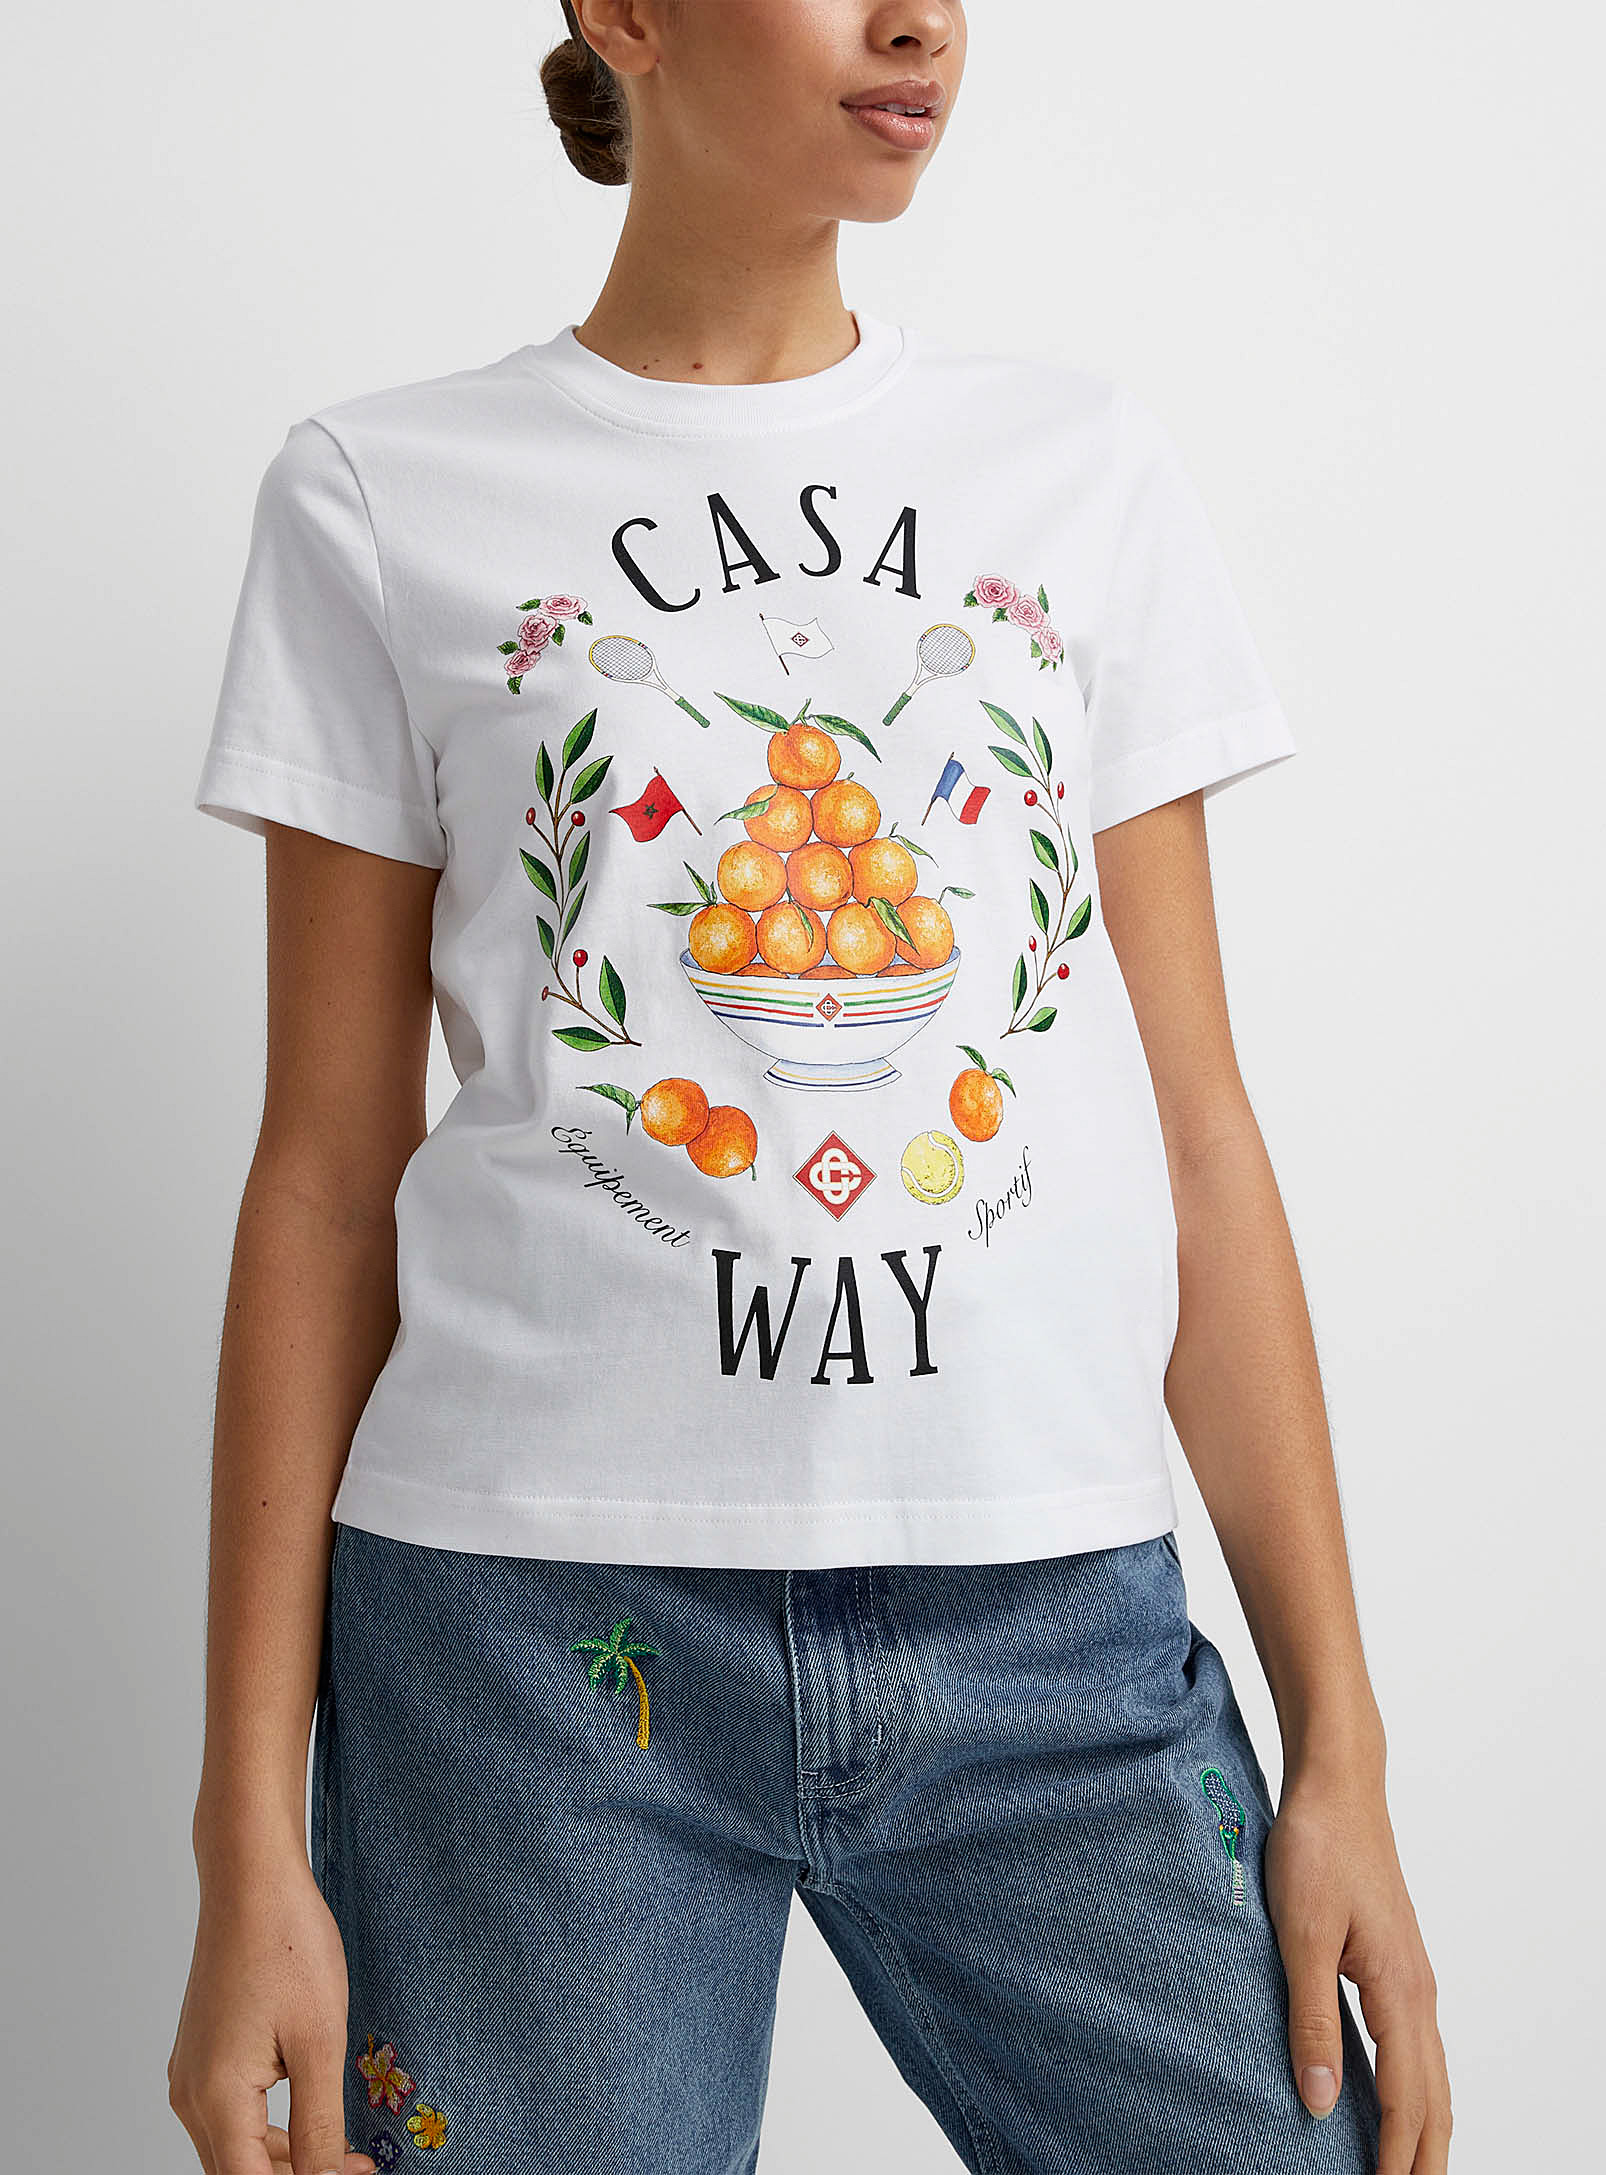 Casablanca - Women's Casa Way T-shirt